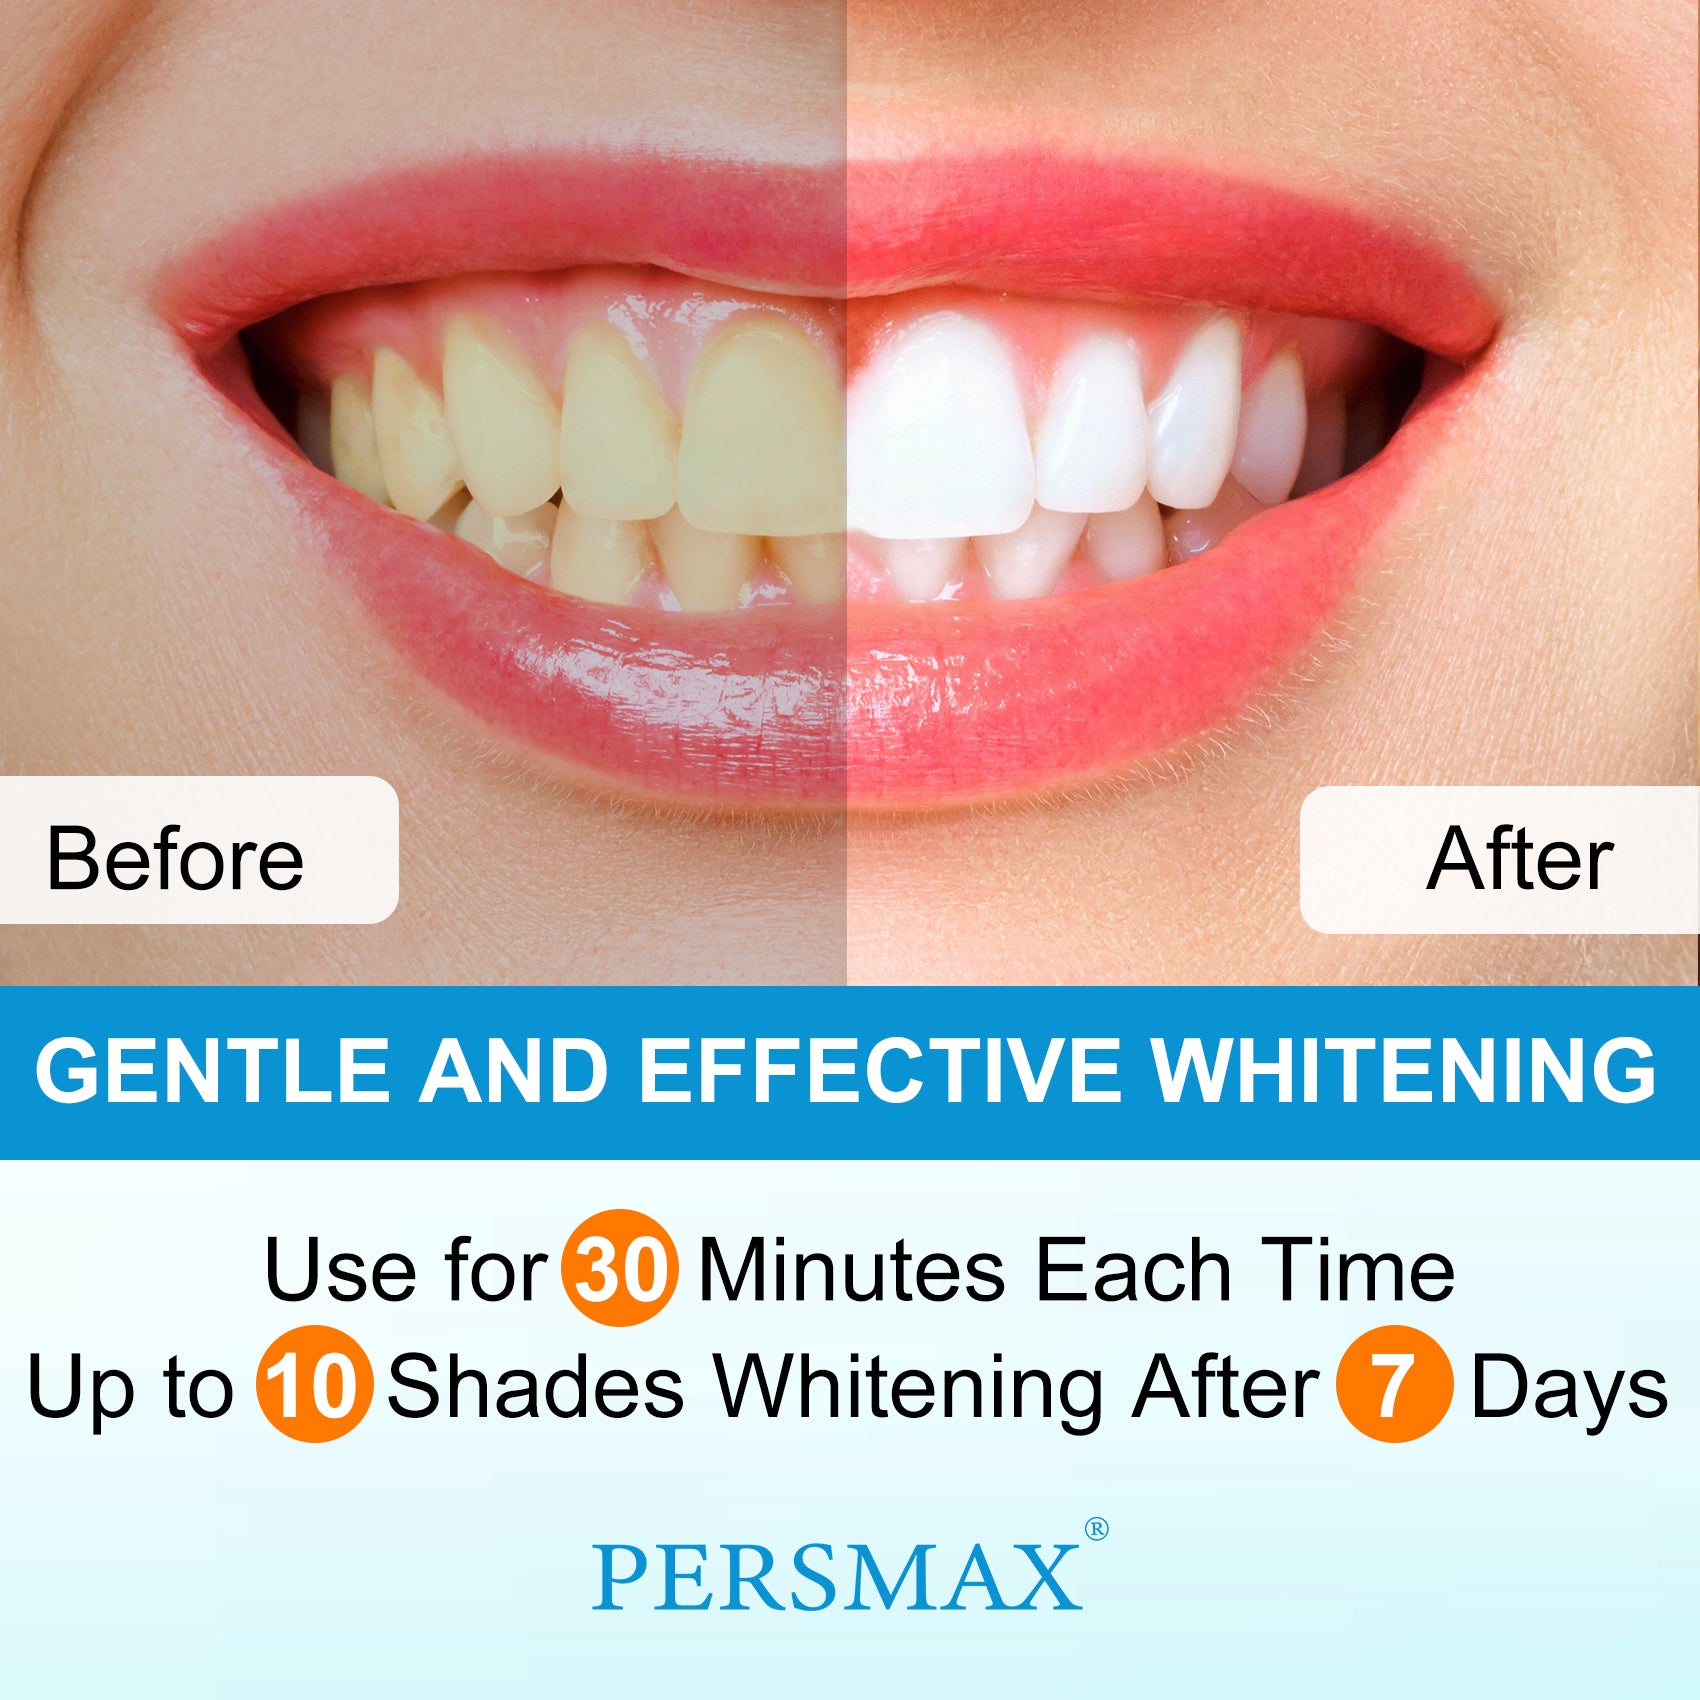 PERSMAX Mild Mint Teeth Whitening Strips-14 Treatments 28 Strip - PERSMAX